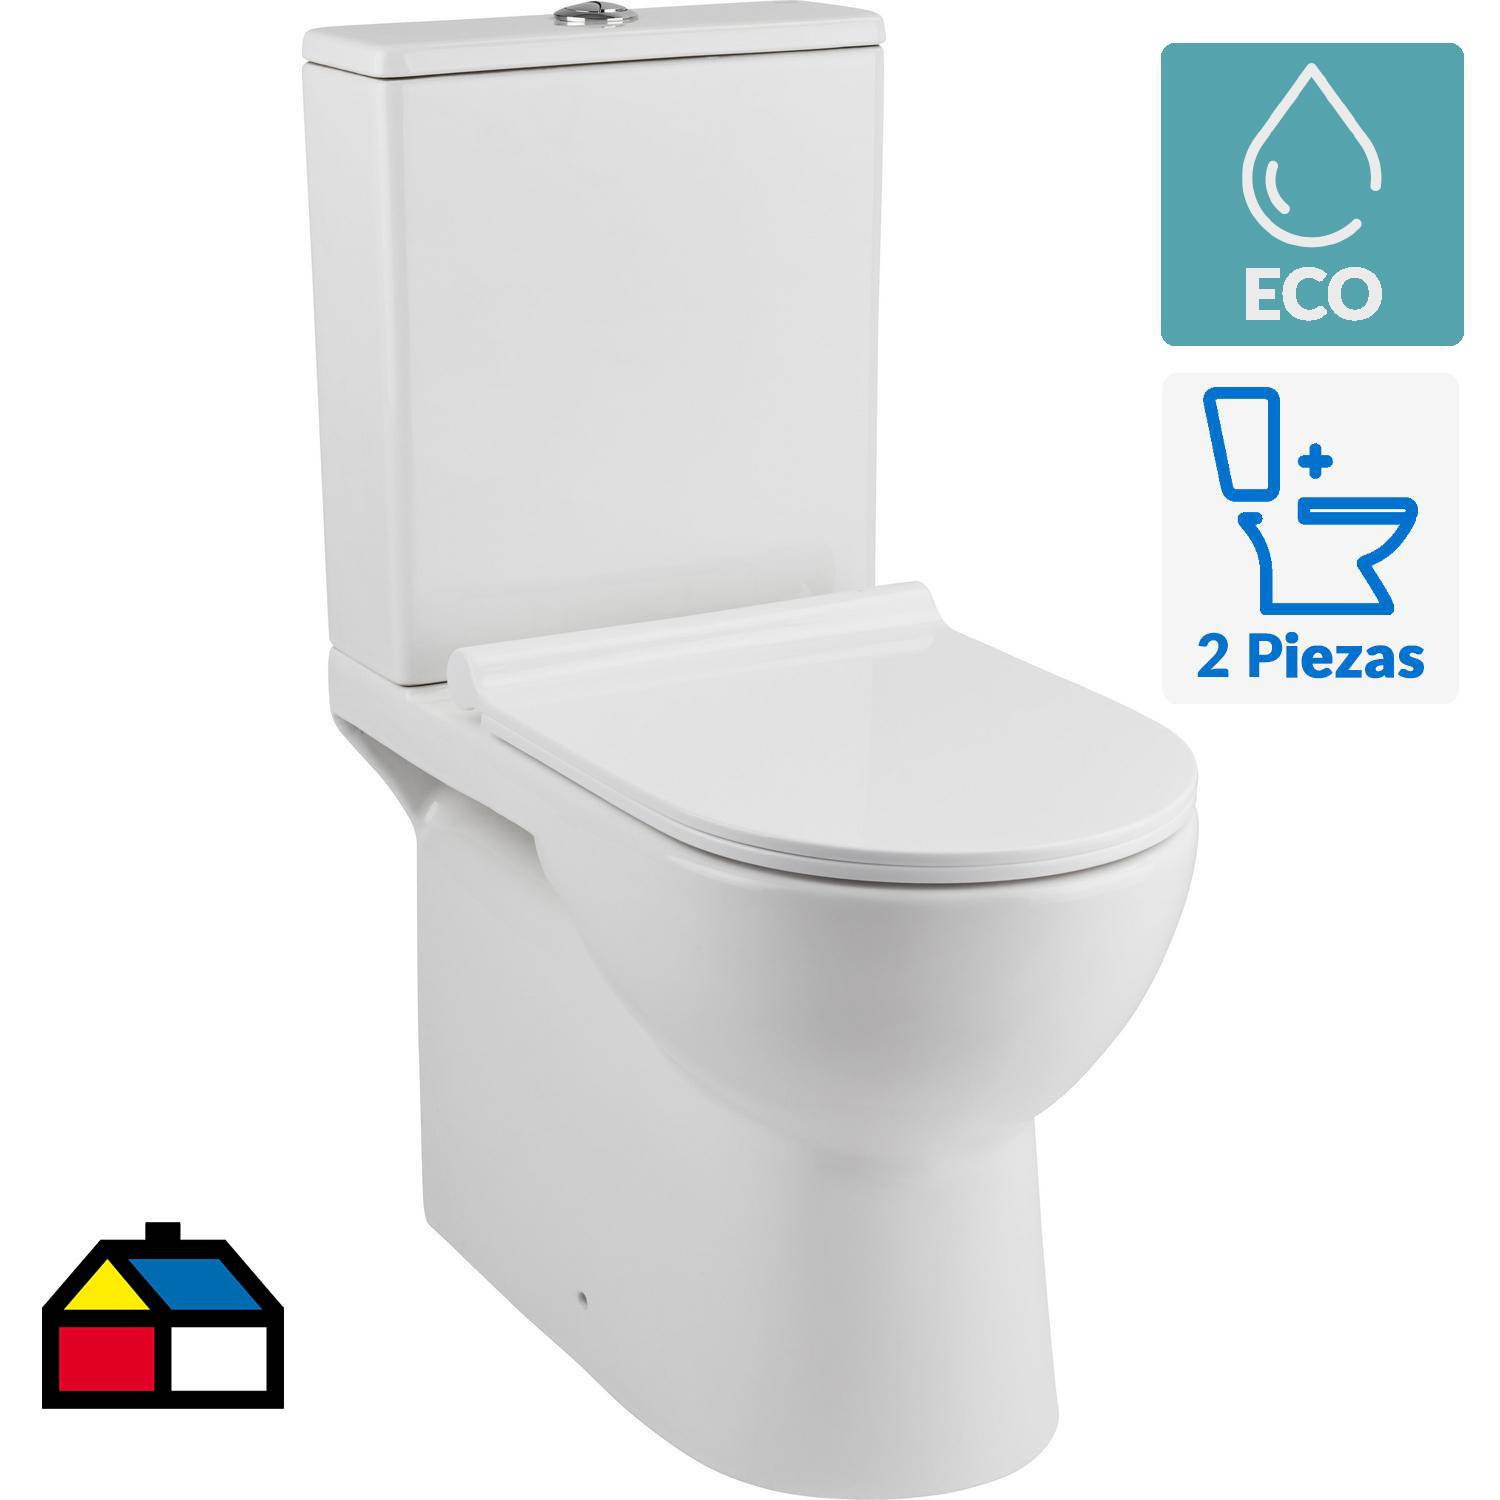 Bidet para WC fácil instalación Eco Bidet.